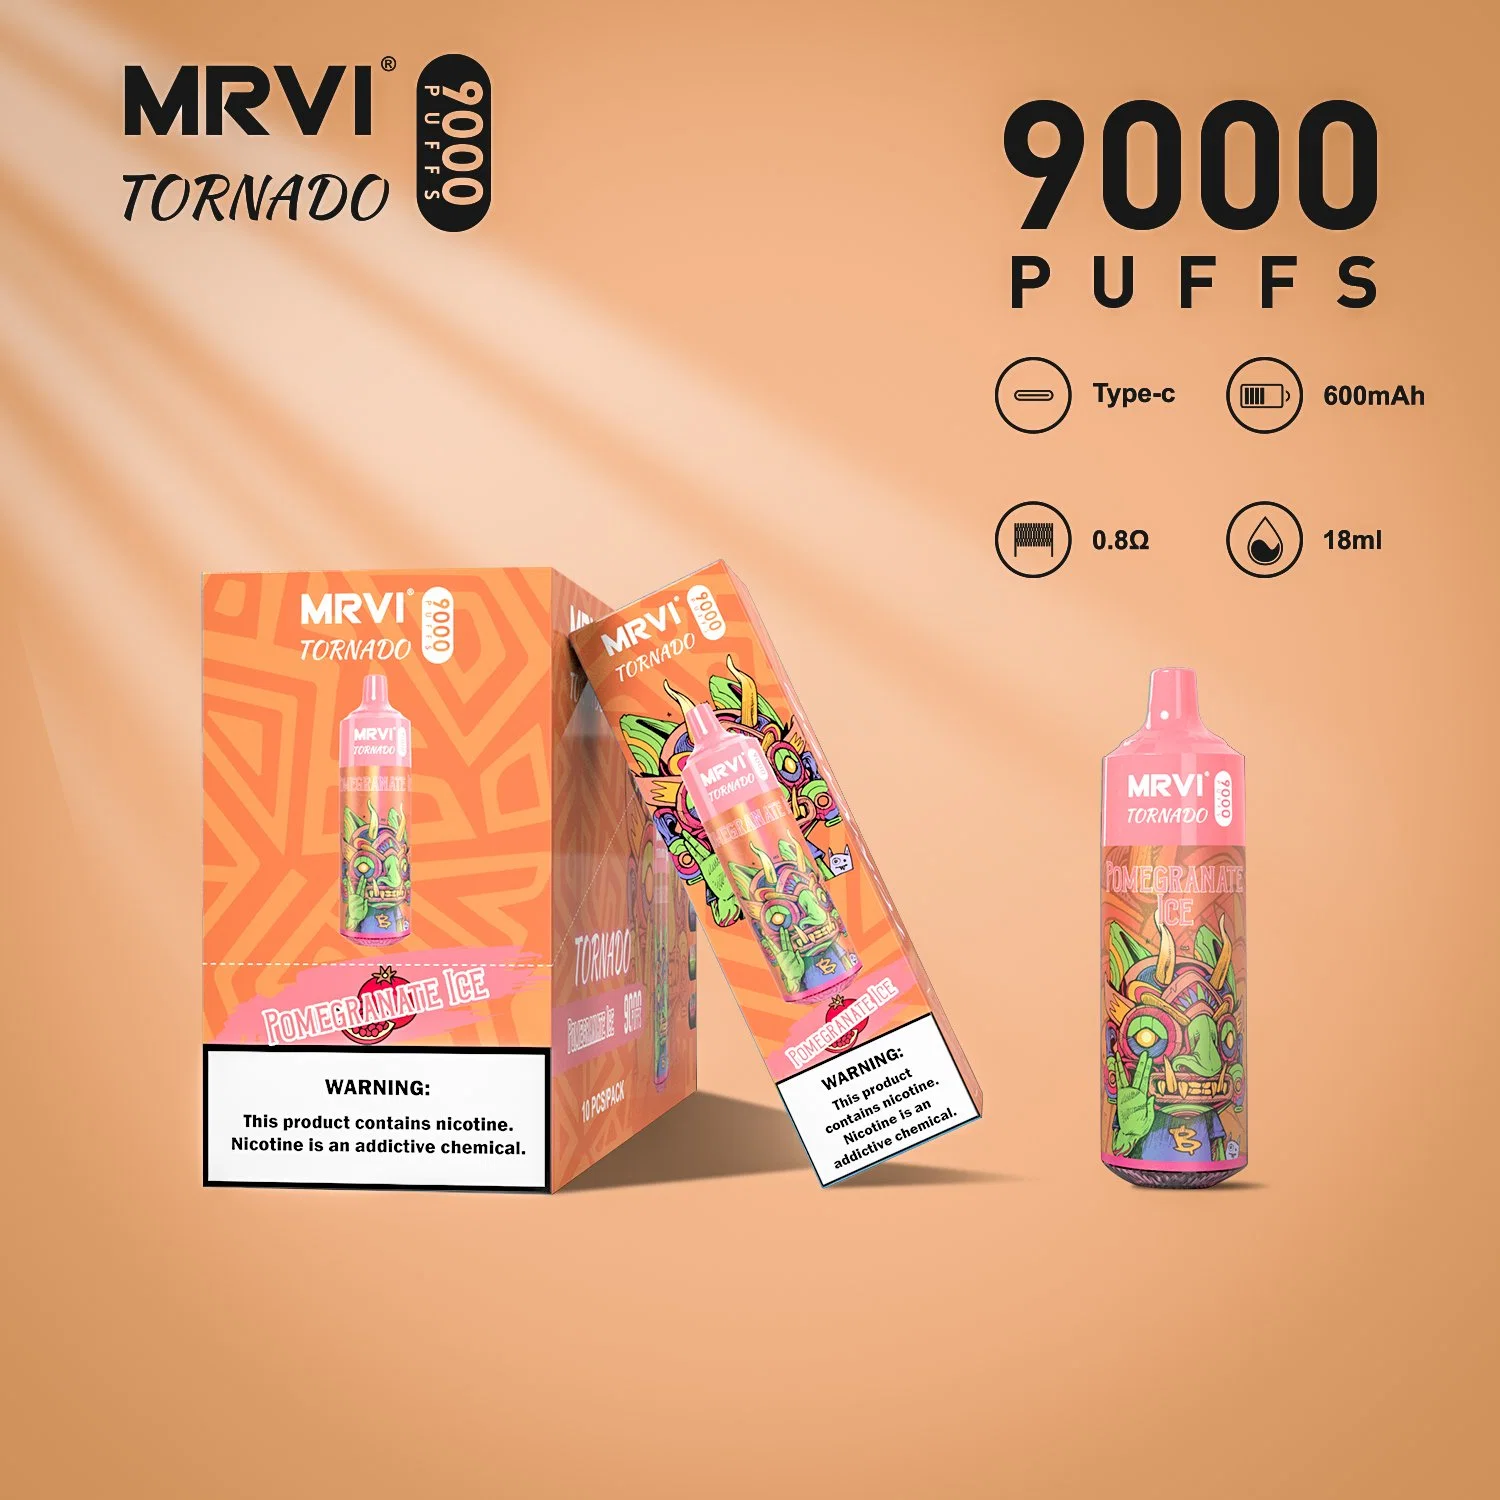 Original Mrvi Tornado 9000 puffs stylo Vape jetable 10 saveurs 0%2% &amp;3%5% Flash RVB réservoir Design 10 Flavors Type-C rechargeable Mini E-cigarette jetable